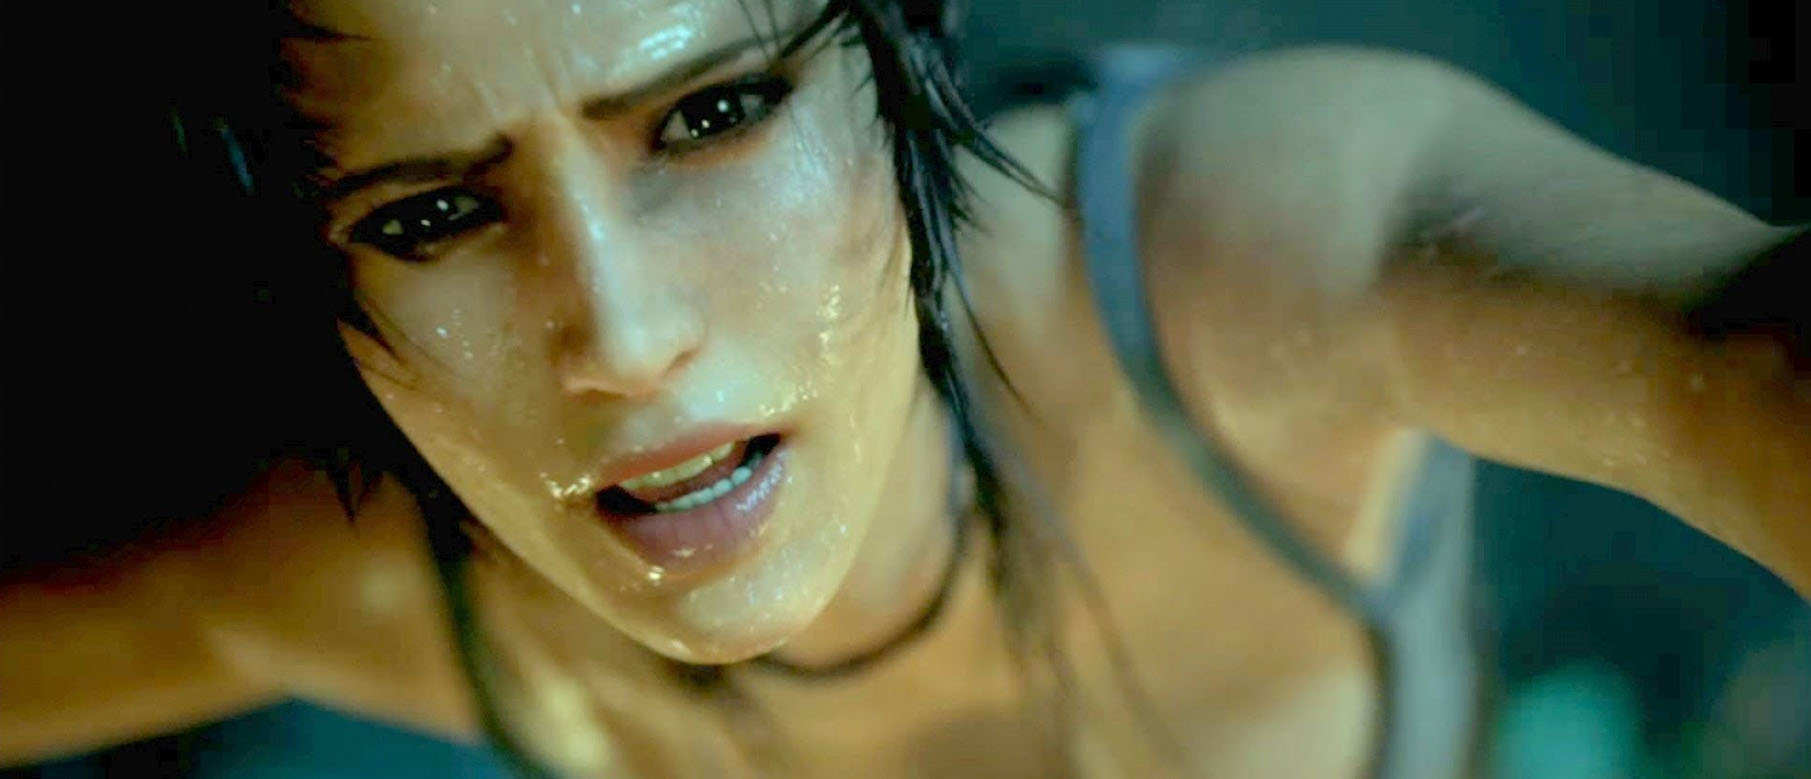 Изображение к Сценарист Tomb Raider призывает к разнообразию персонажей, говорит, что игры могут научить сопереживанию